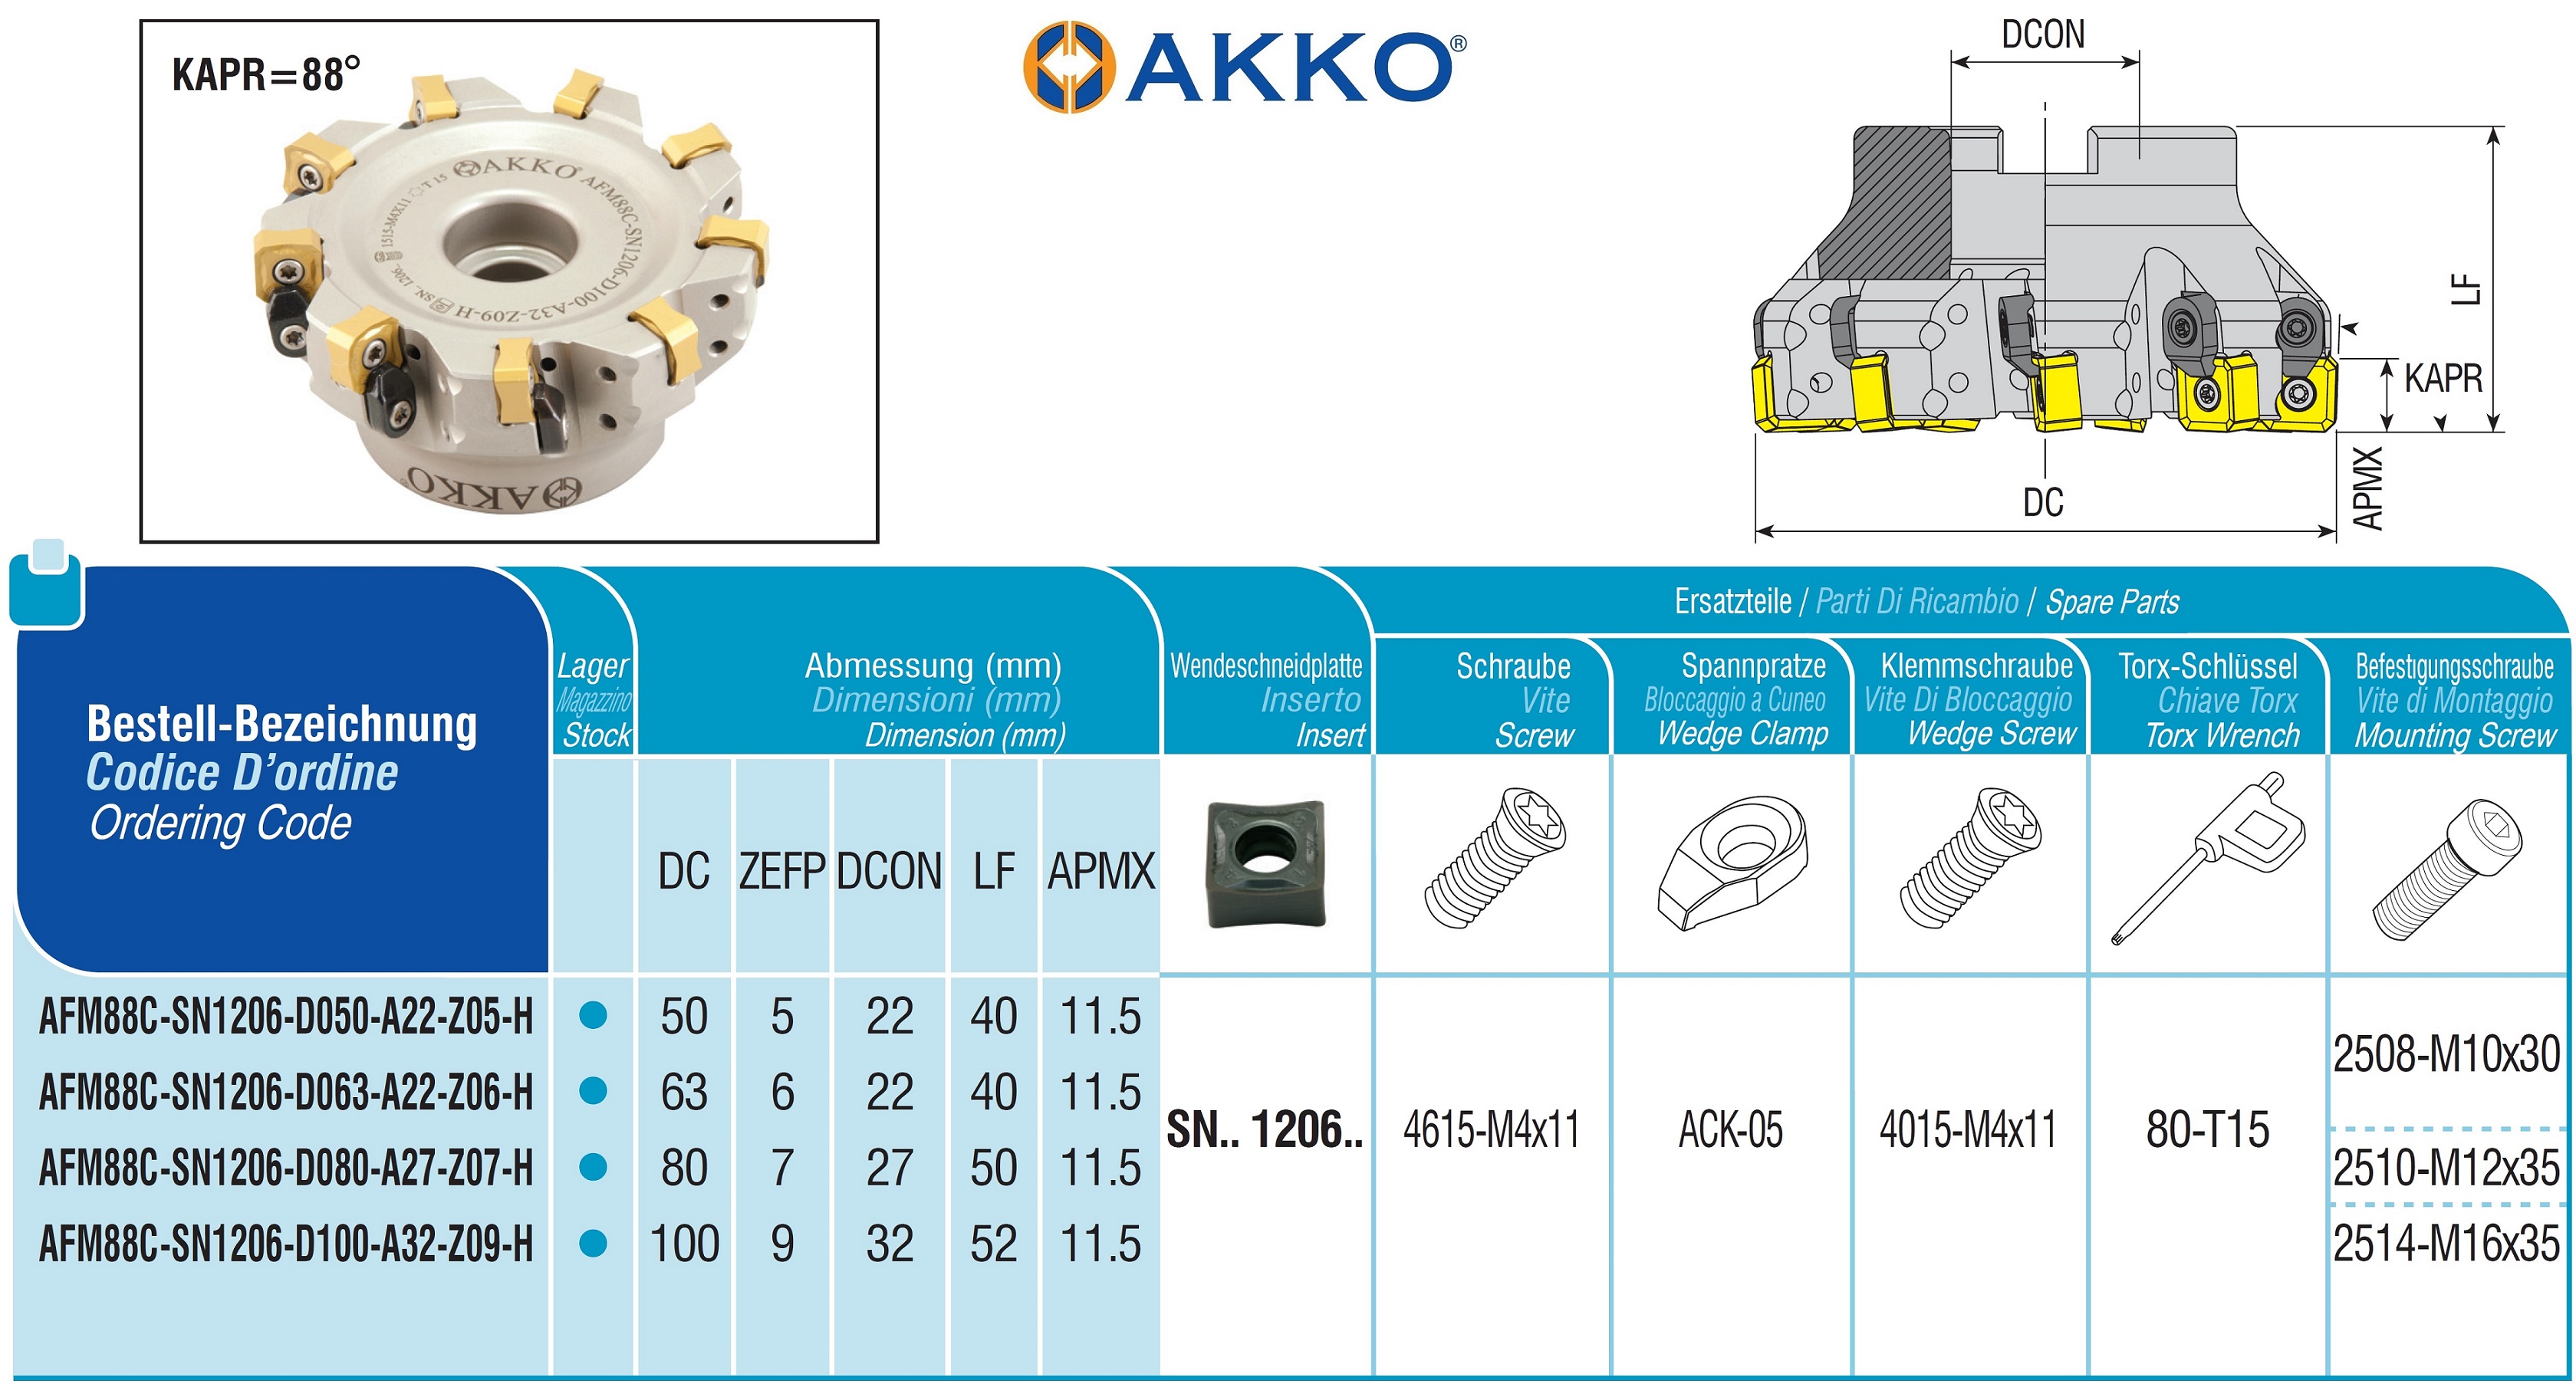 AKKO-Eckmesserkopf ø 80 mm, 88° Anstellwinkel, kompatibel mit Korloy SN.. 1206..Schaft-Ausführung ø 27 mm (Typ A), mit Innenkühlung, Z=7